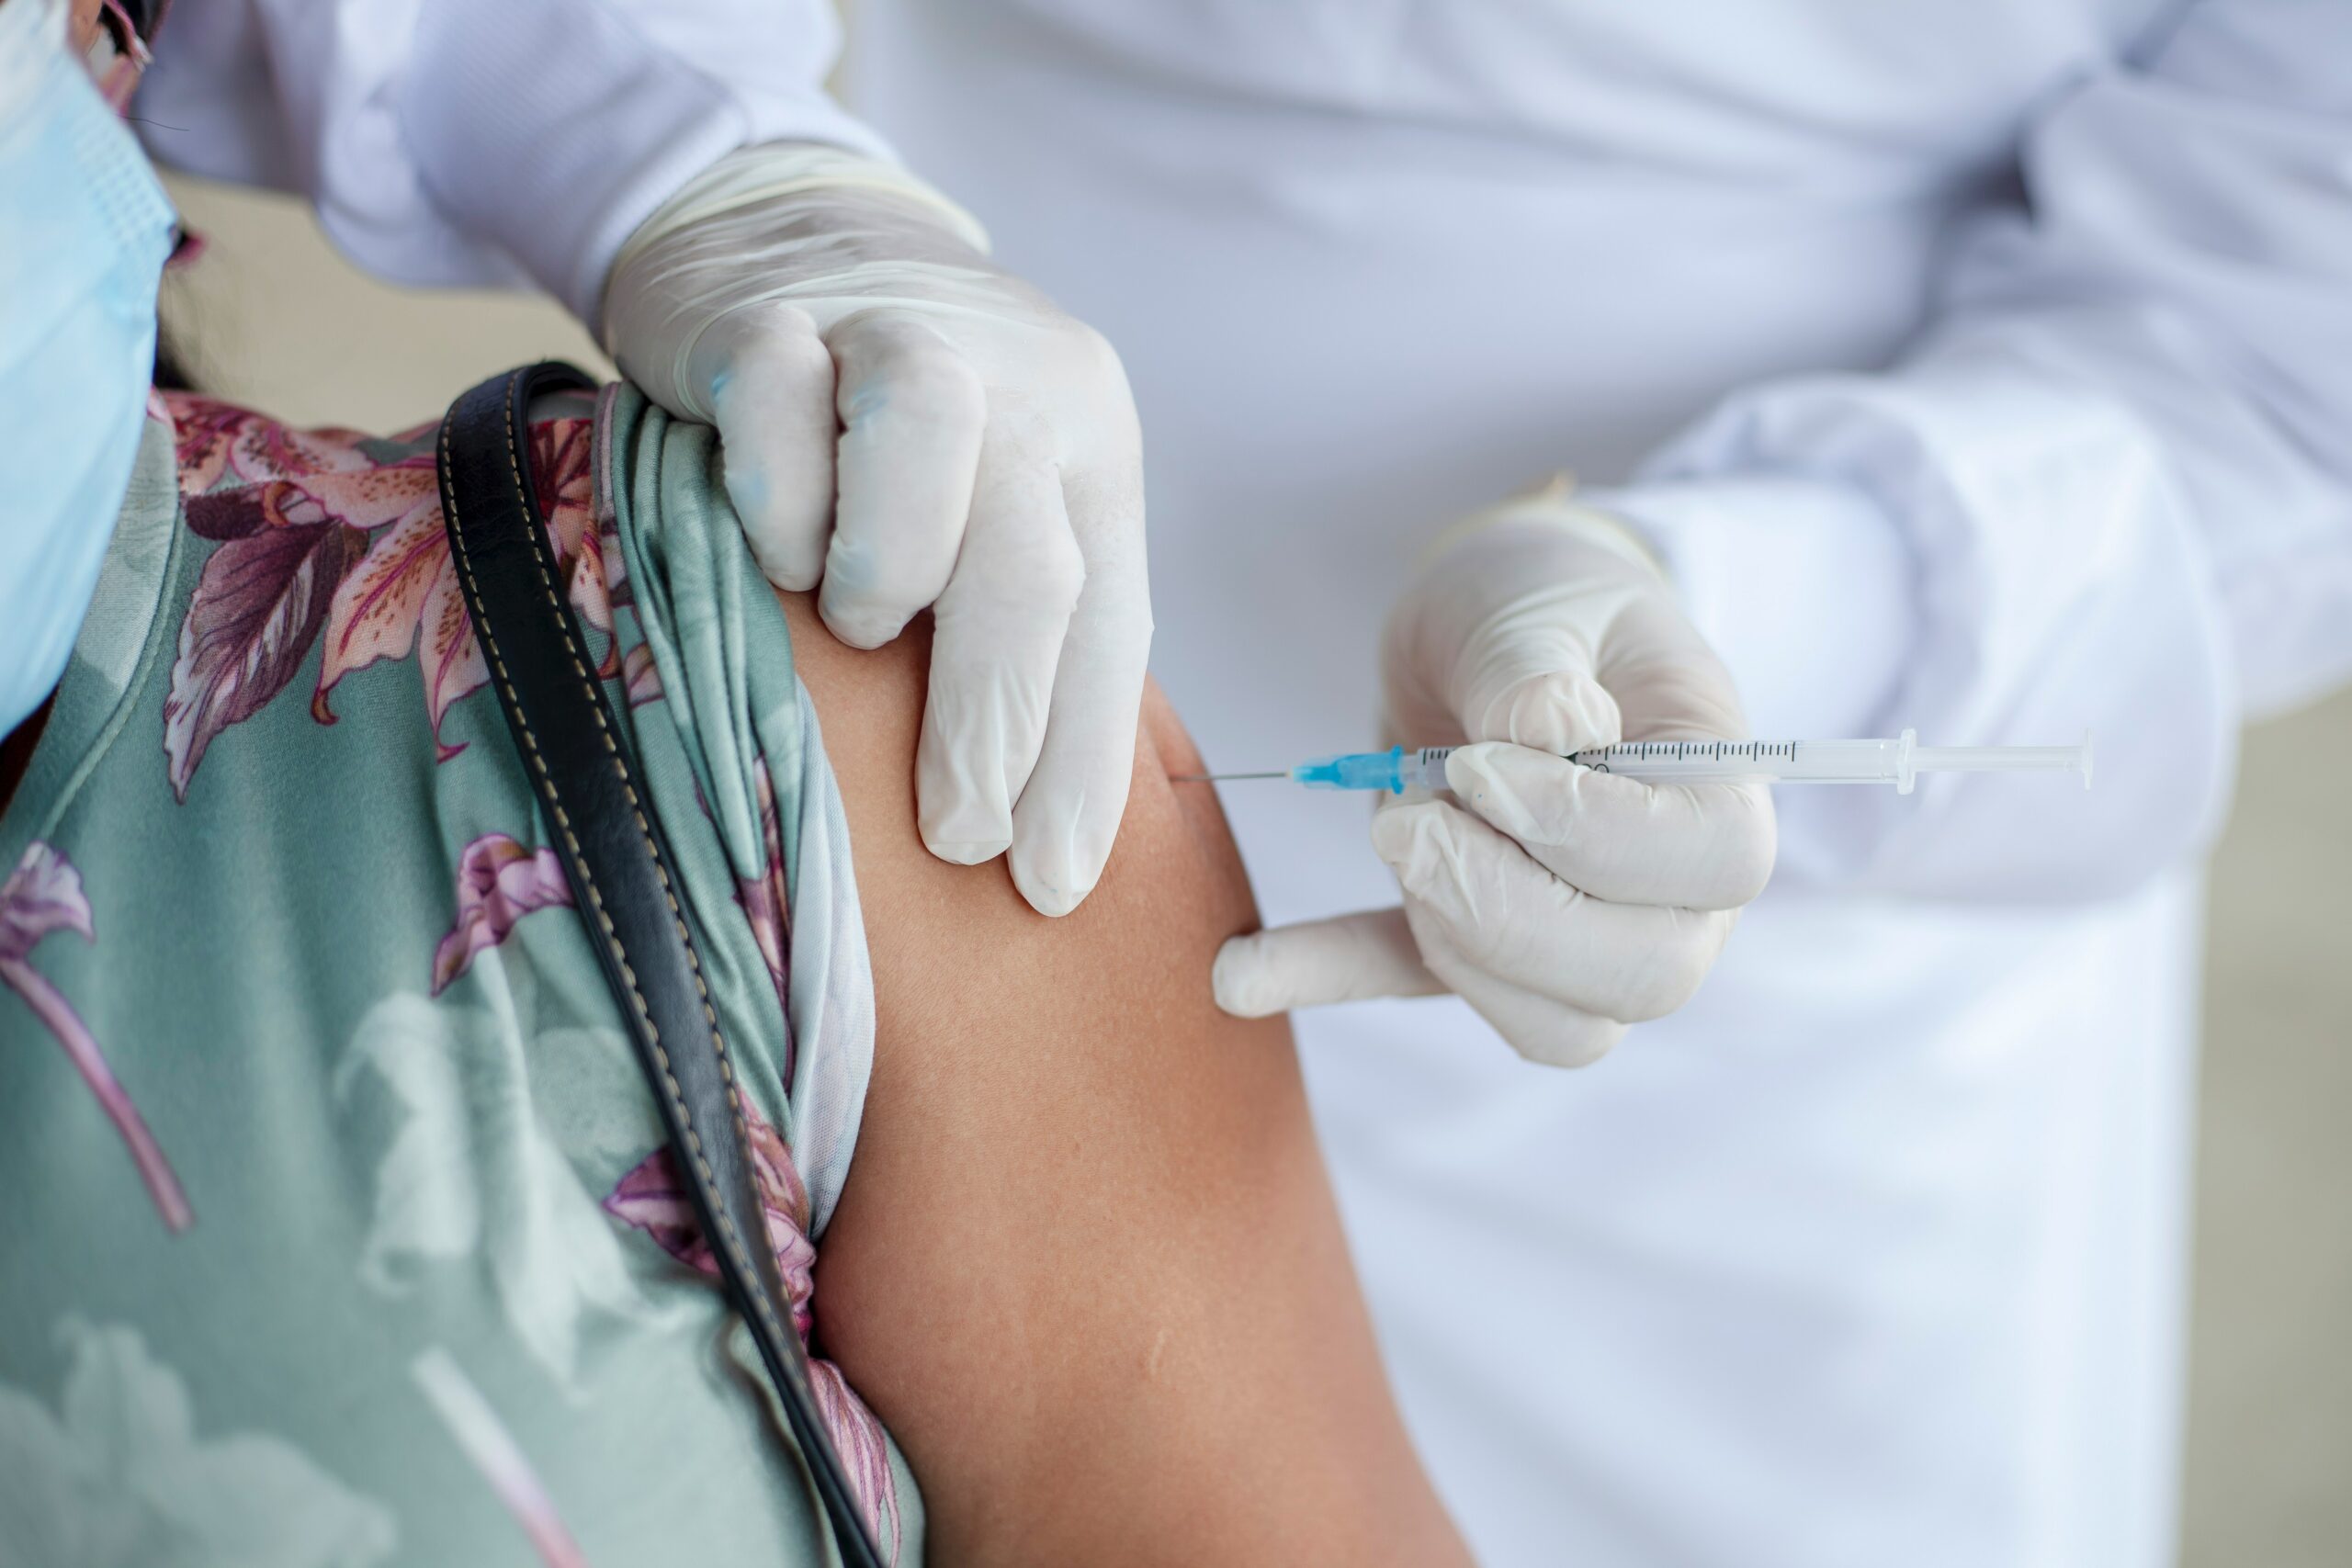 สธ.เปิด 8 สูตรวัคซีนฉีดประชาชน-บุคลากรการแพทย์ – ธุรกิจ